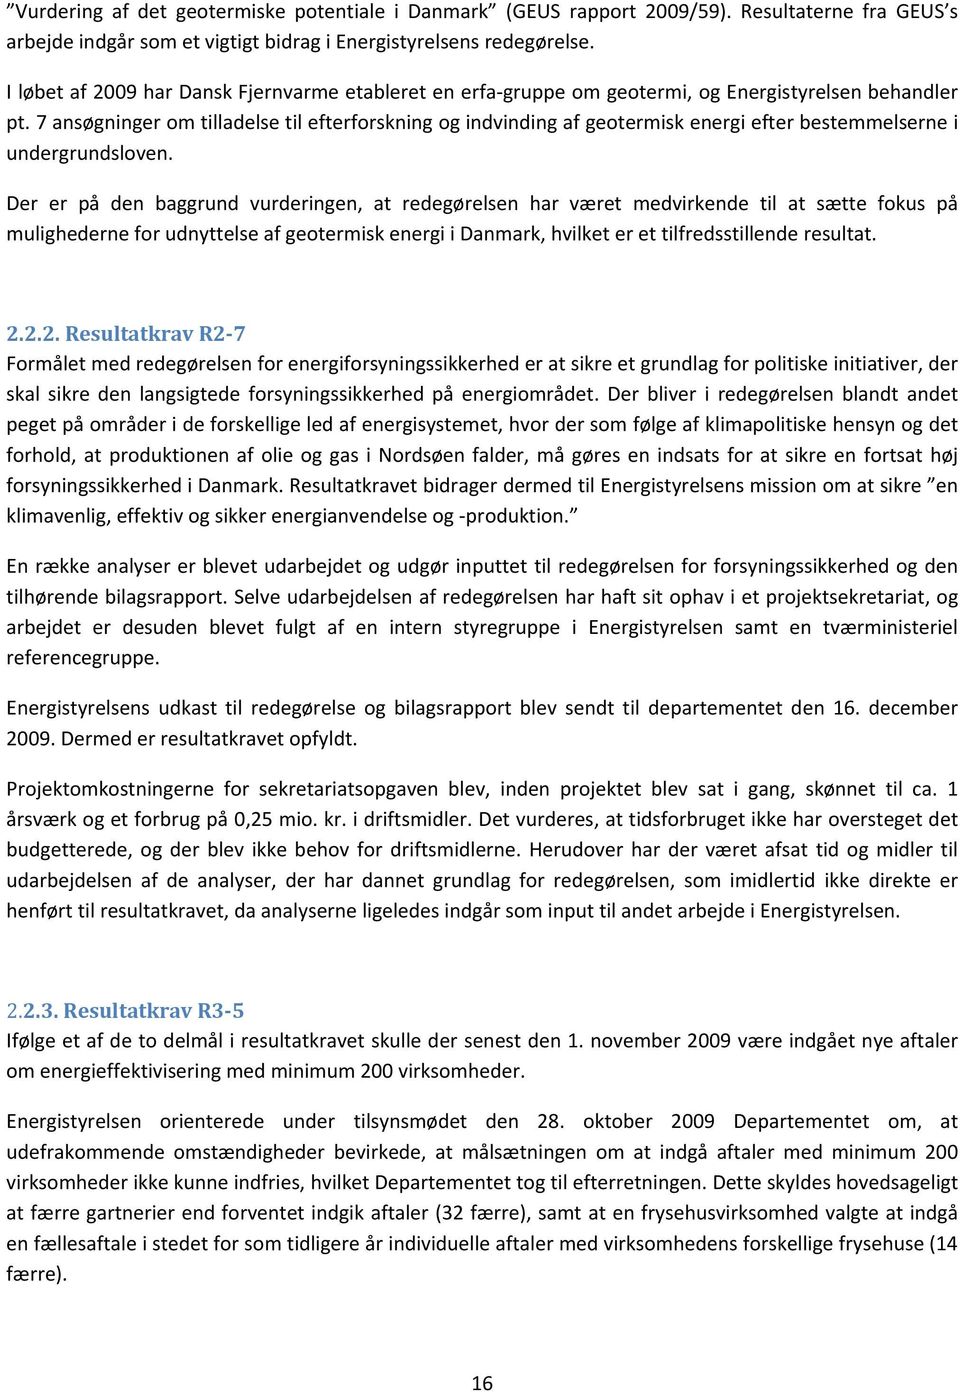 7 ansøgninger om tilladelse til efterforskning og indvinding af geotermisk energi efter bestemmelserne i undergrundsloven.